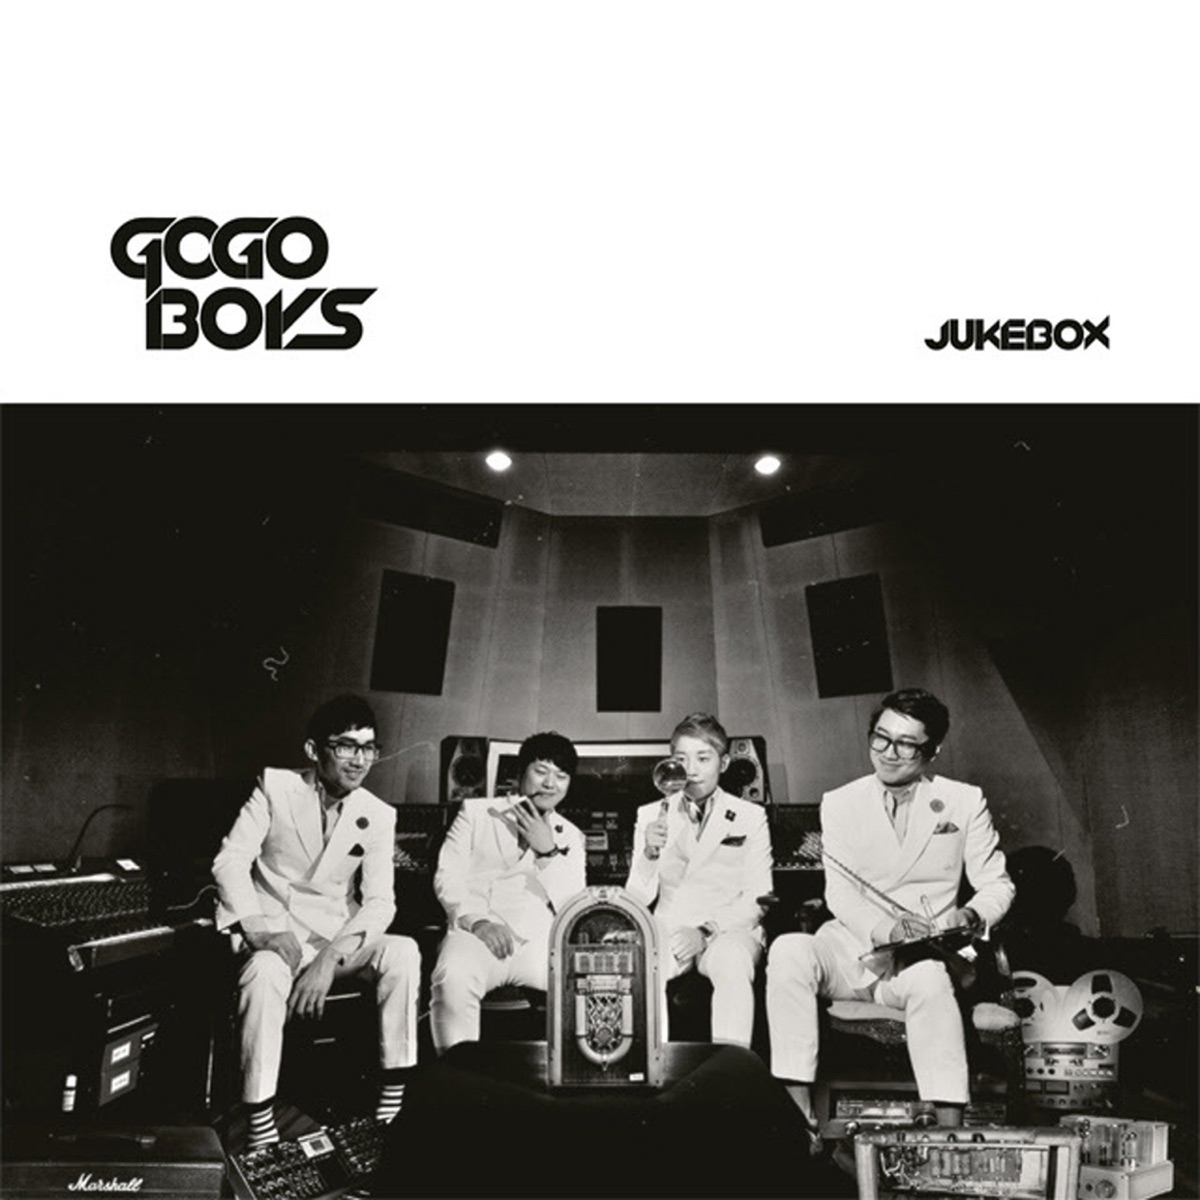 GOGOBOYS – JUKEBOX